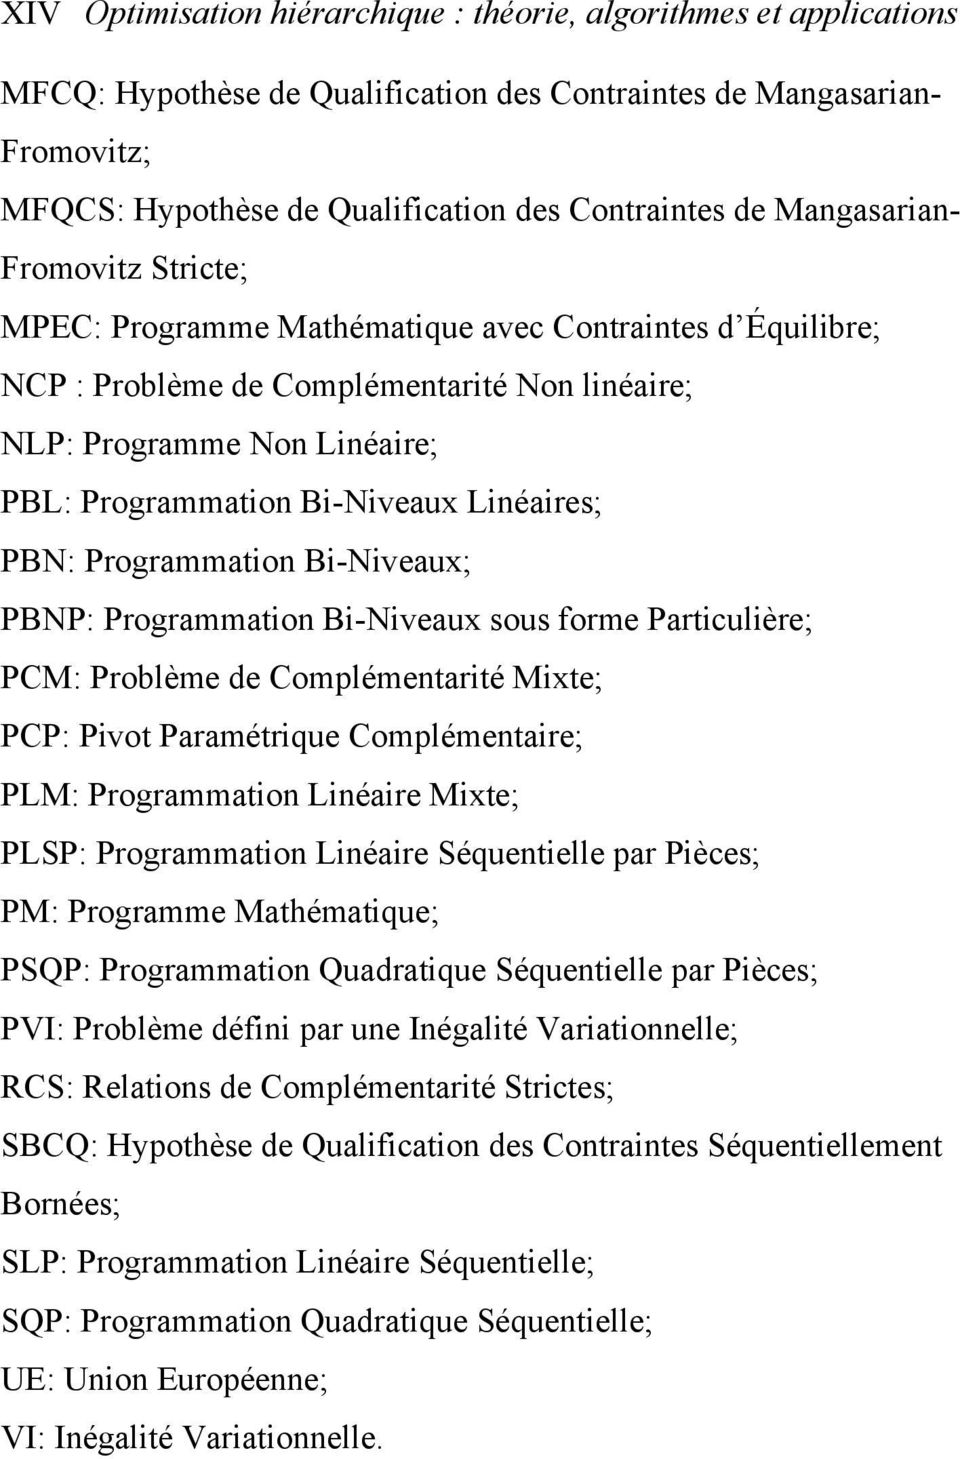 Linéaires; PBN: Programmation Bi-Niveaux; PBNP: Programmation Bi-Niveaux sous forme Particulière; PCM: Problème de Complémentarité Mixte; PCP: Pivot Paramétrique Complémentaire; PLM: Programmation